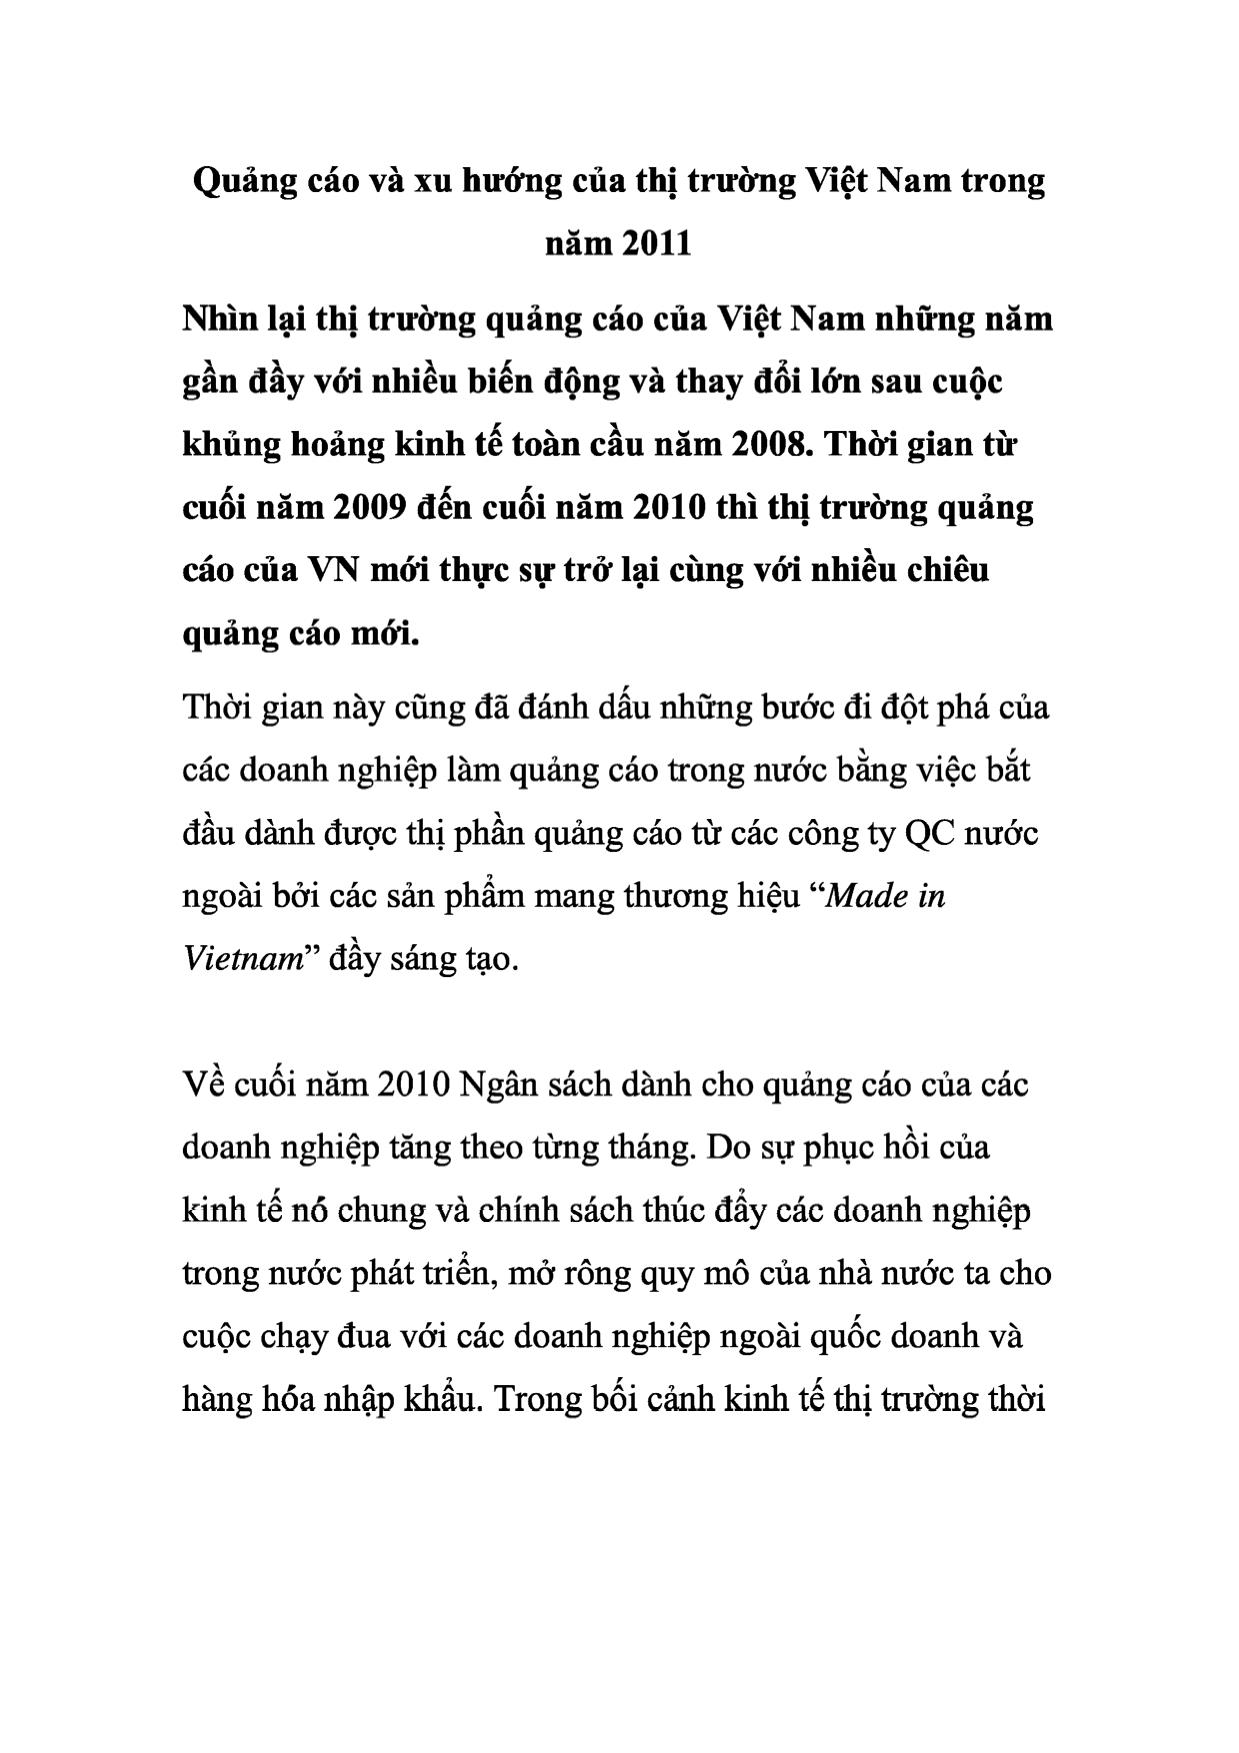 Quảng cáo và các xu hướng của thị trường Việt Nam trong năm 2011 trang 1